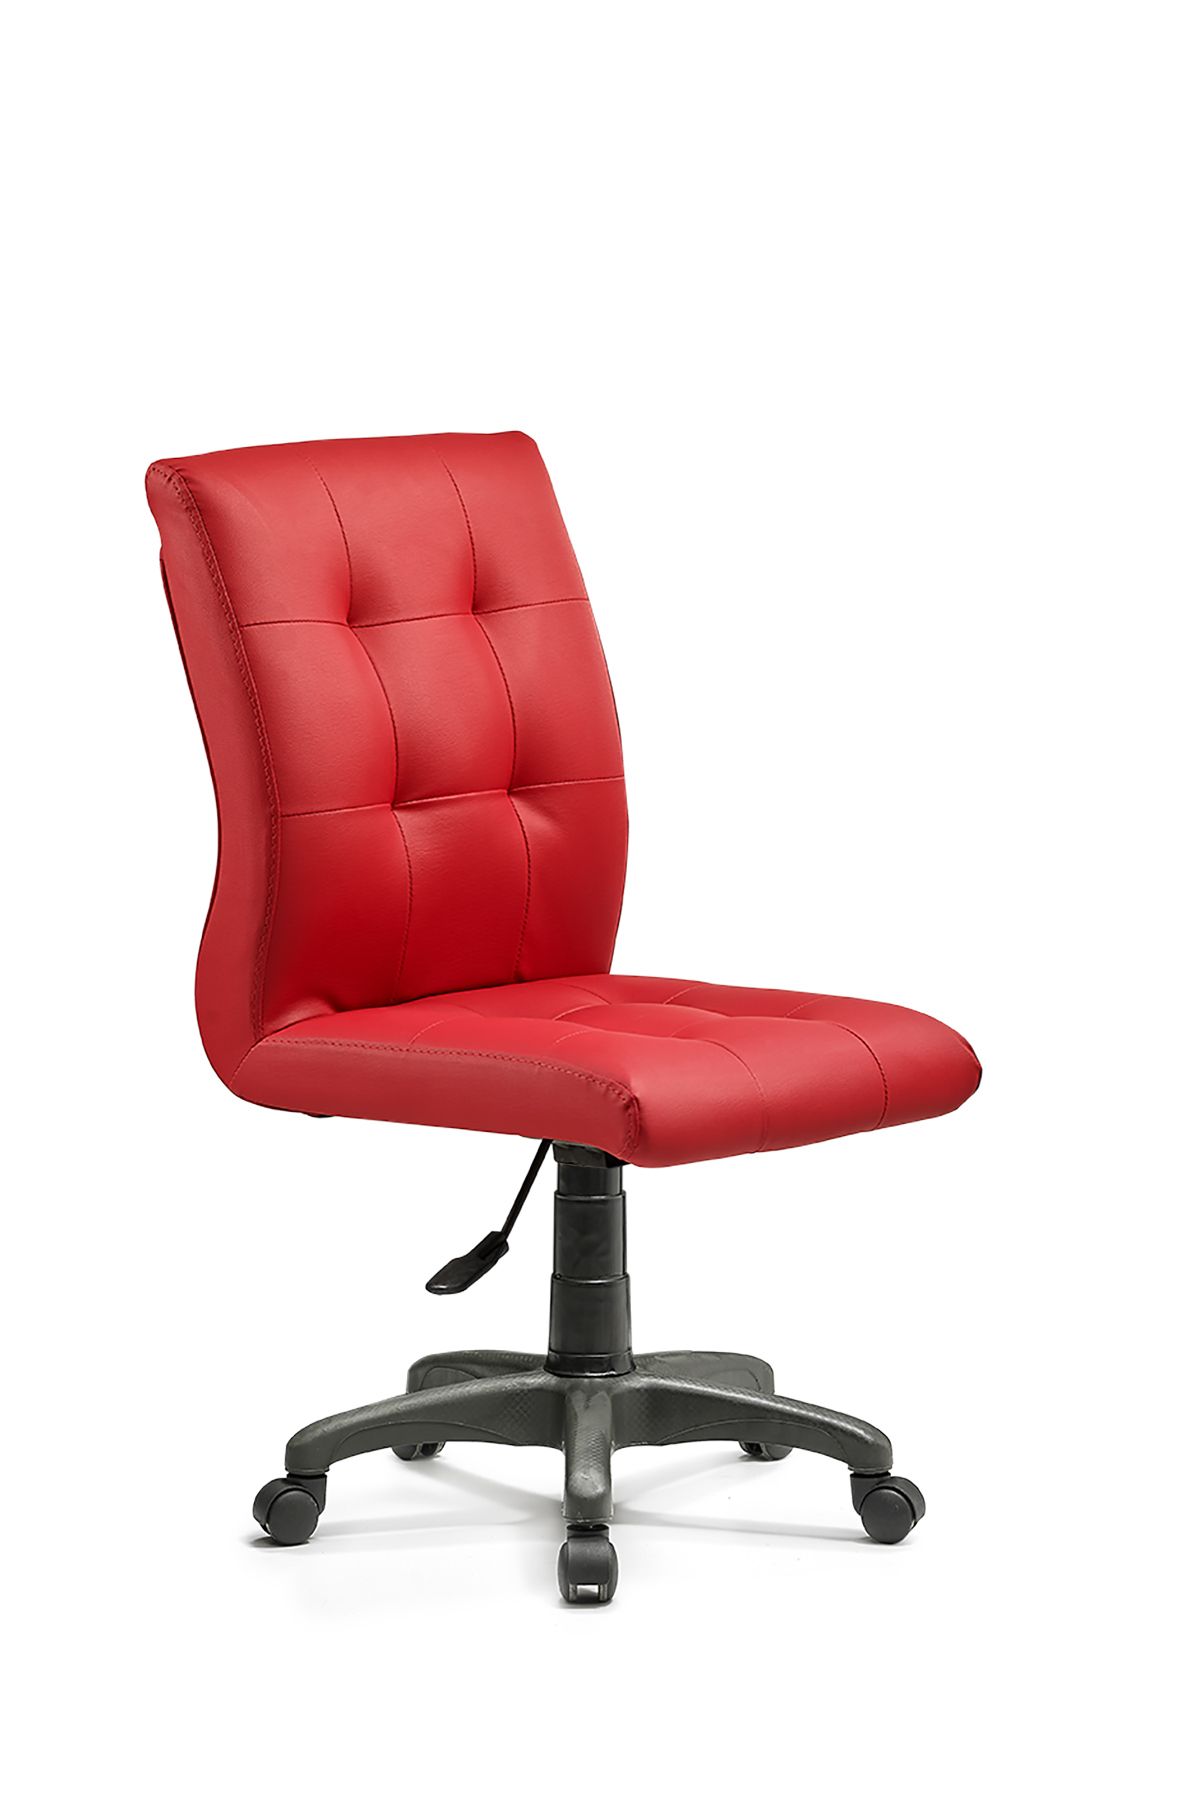 MEHMET YAREN BURO Zerda-3 Bilgisayar Koltuğu Arkalıklı Ofis Büro Sandalyesi Tekerlekli Kırmızı Renk Plastik Ayaklı